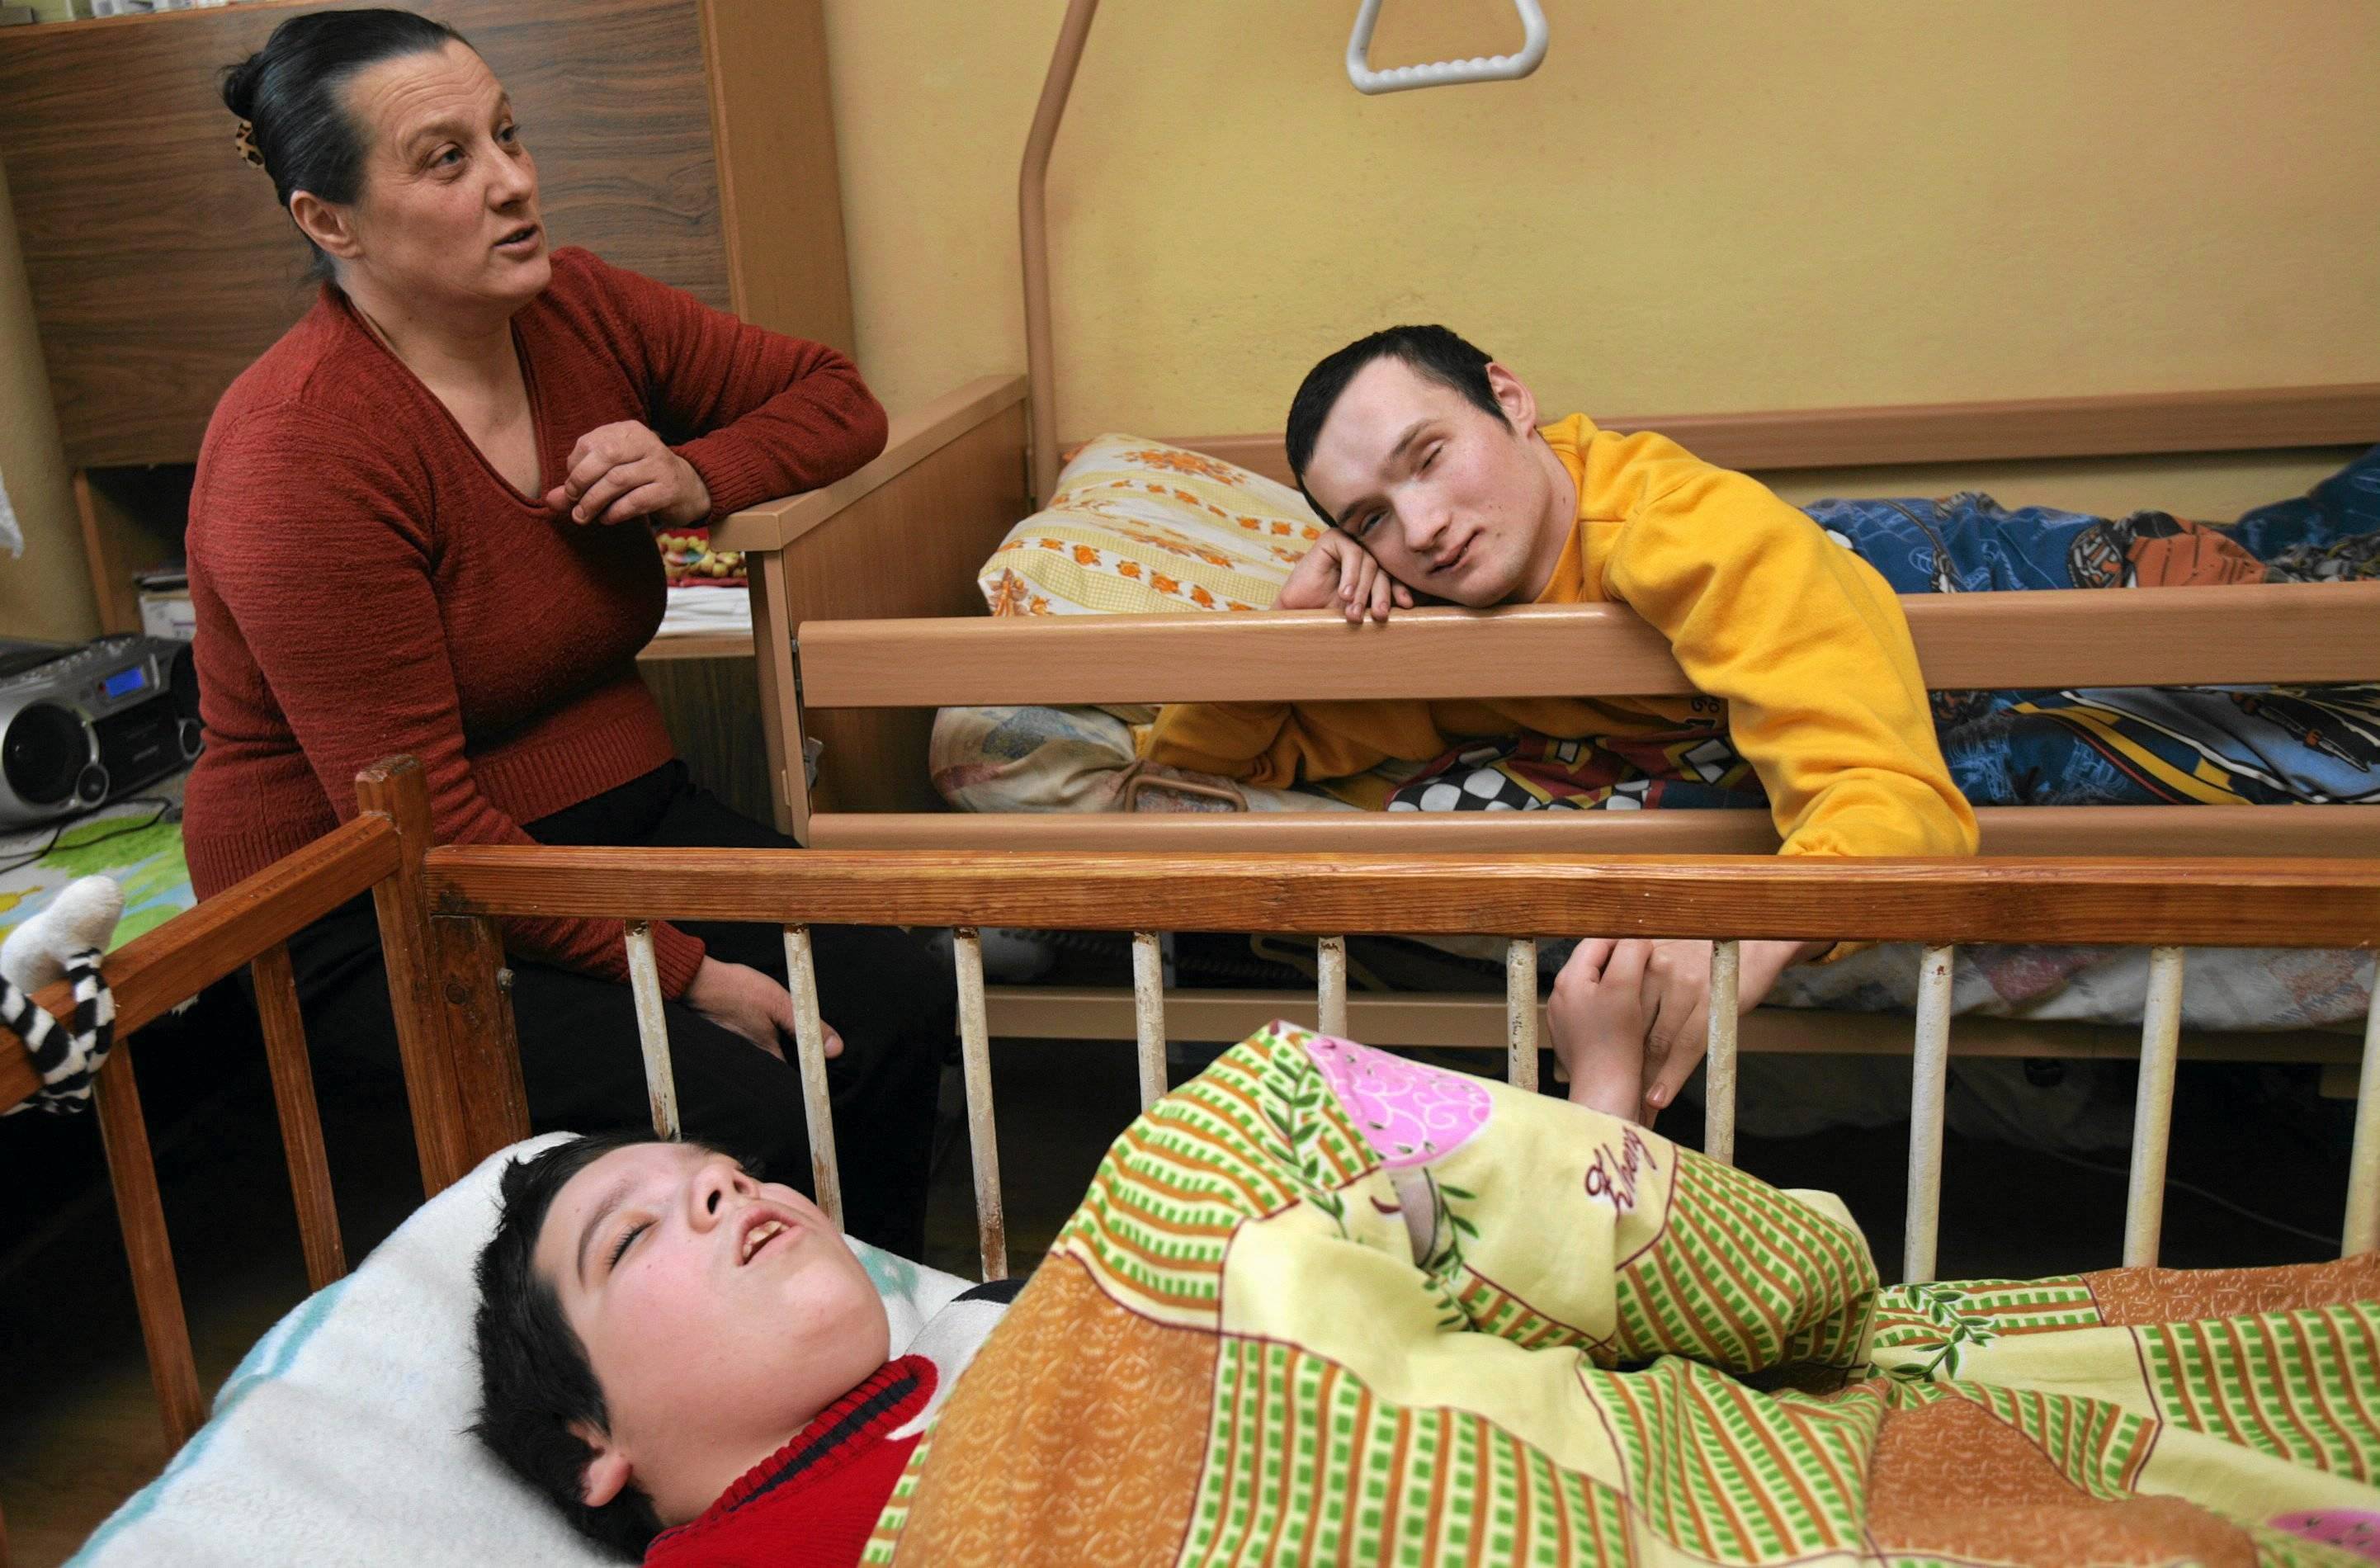 Kobieta patrzy na dwie osoby z niepełnosprawnością leżące w łóżkach